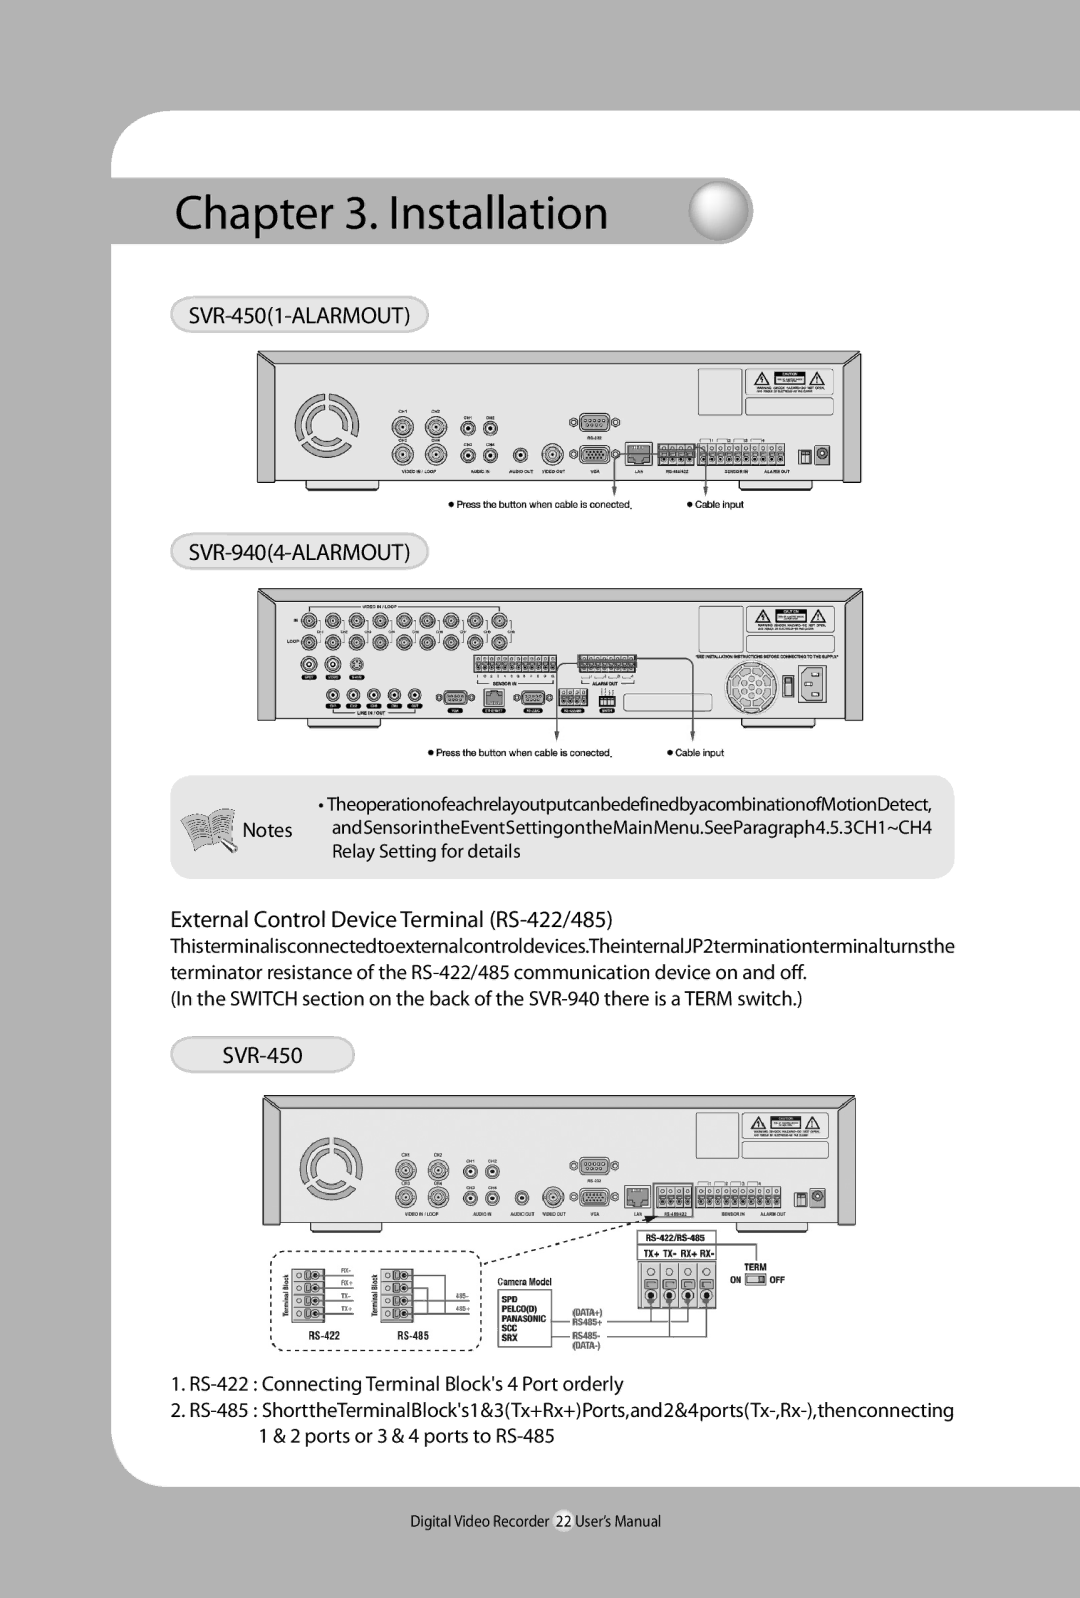 Samsung user manual SVR-4501-ALARMOUT SVR-9404-ALARMOUT, External Control Device Terminal RS-422/485 